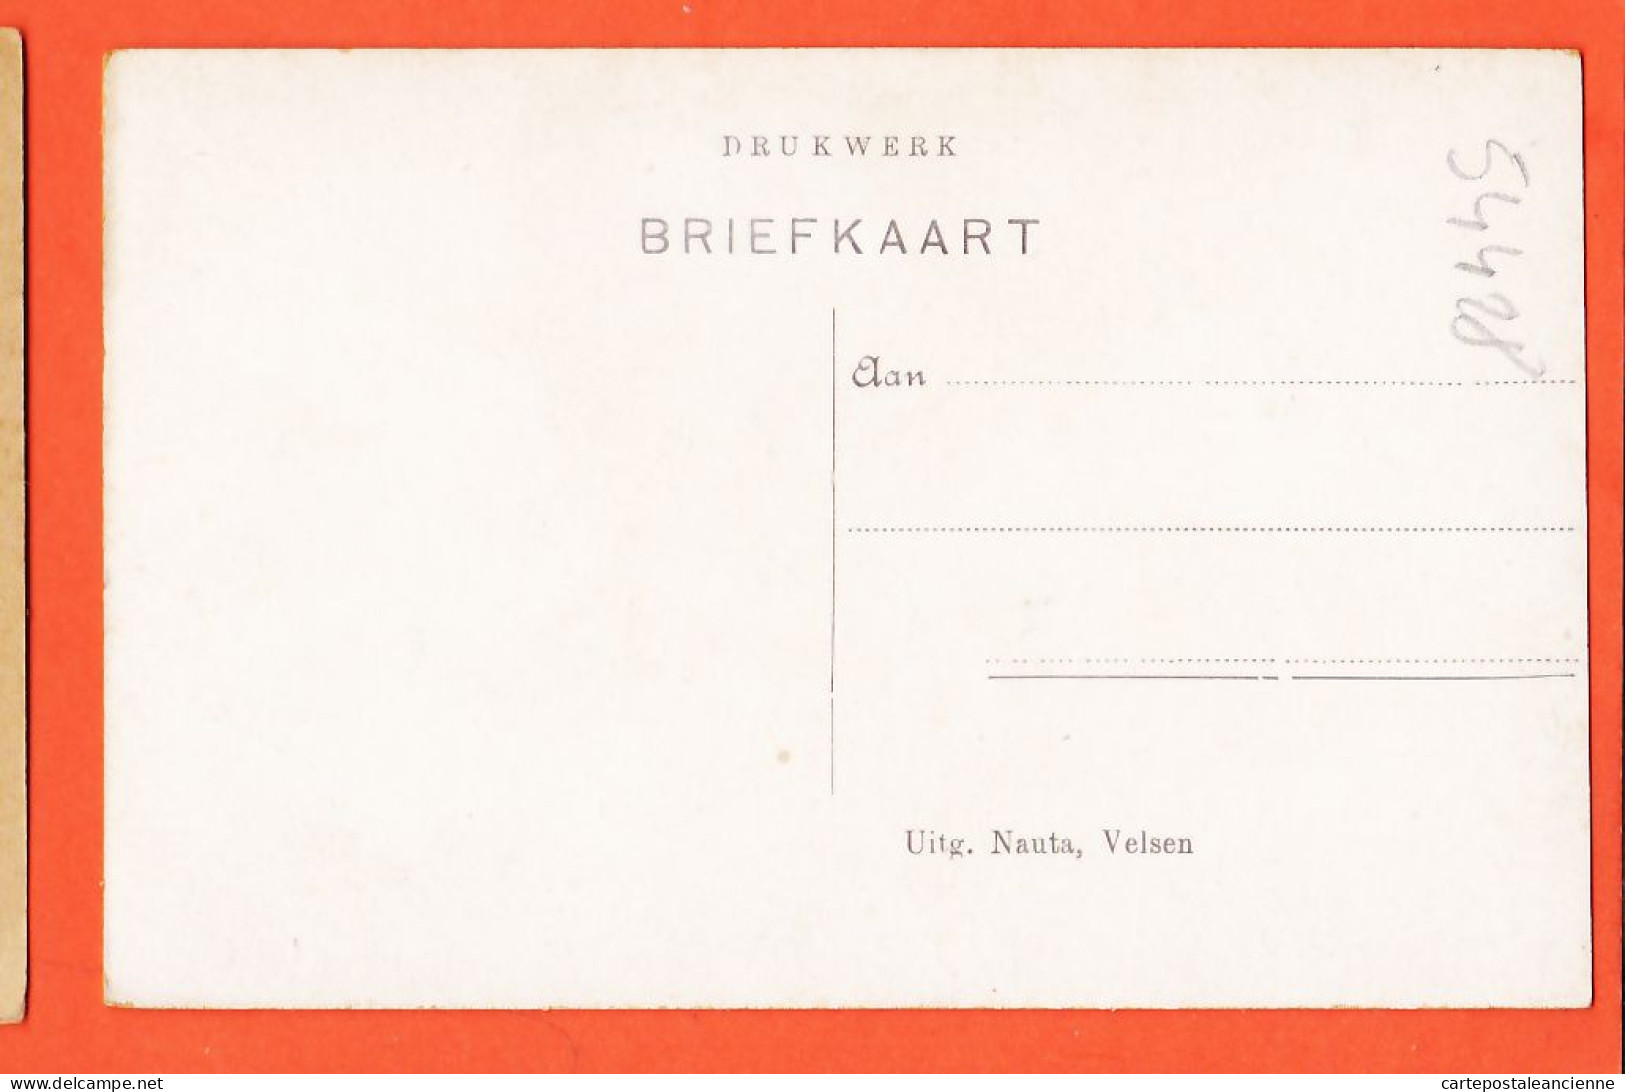 05078 ● SNEEK Friesland Wijde Brugstraat Straatbeeld Scène Rue 1910s NAUTA Velsen 10470 Nederland Niederlande Pays-Bas - Sneek